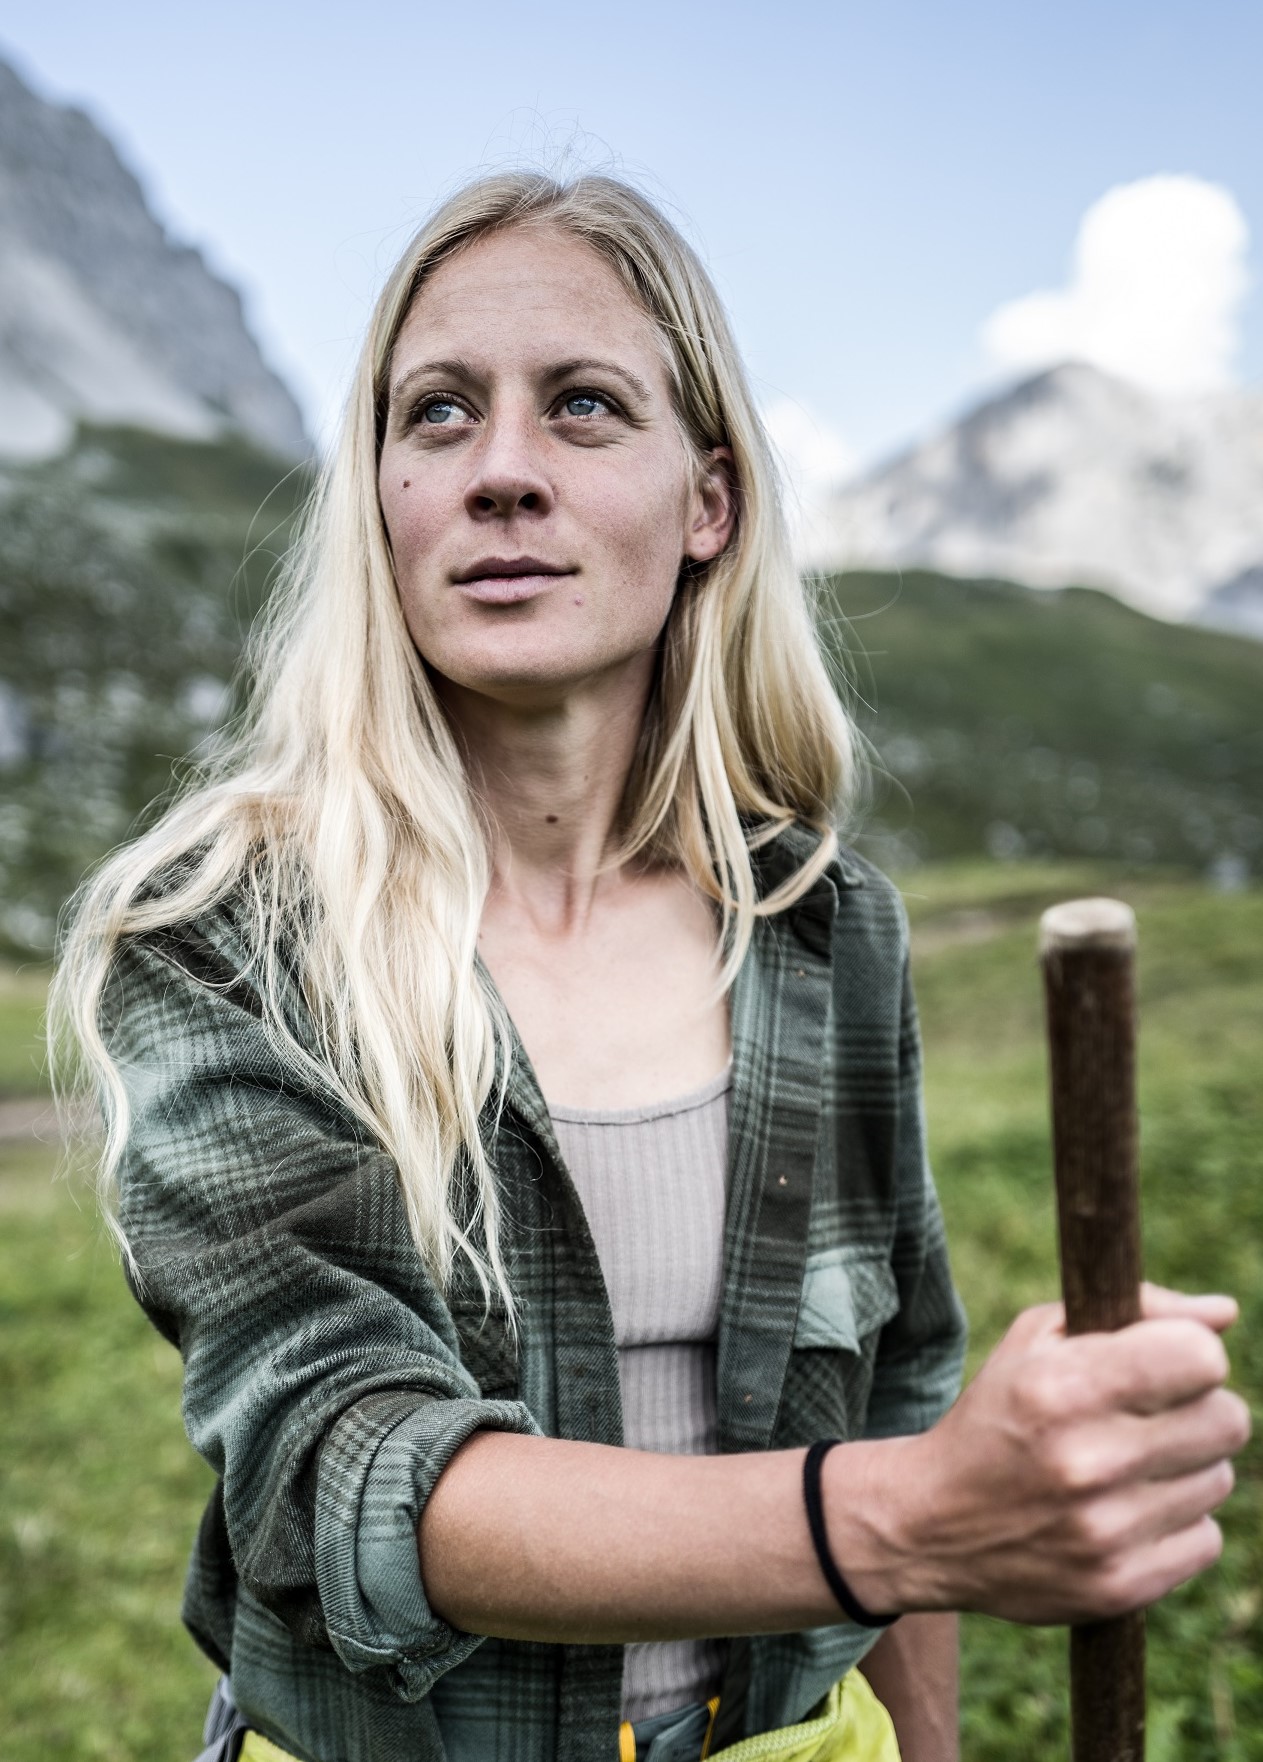 Älplerin Katharina Krepold with her wooden stick.